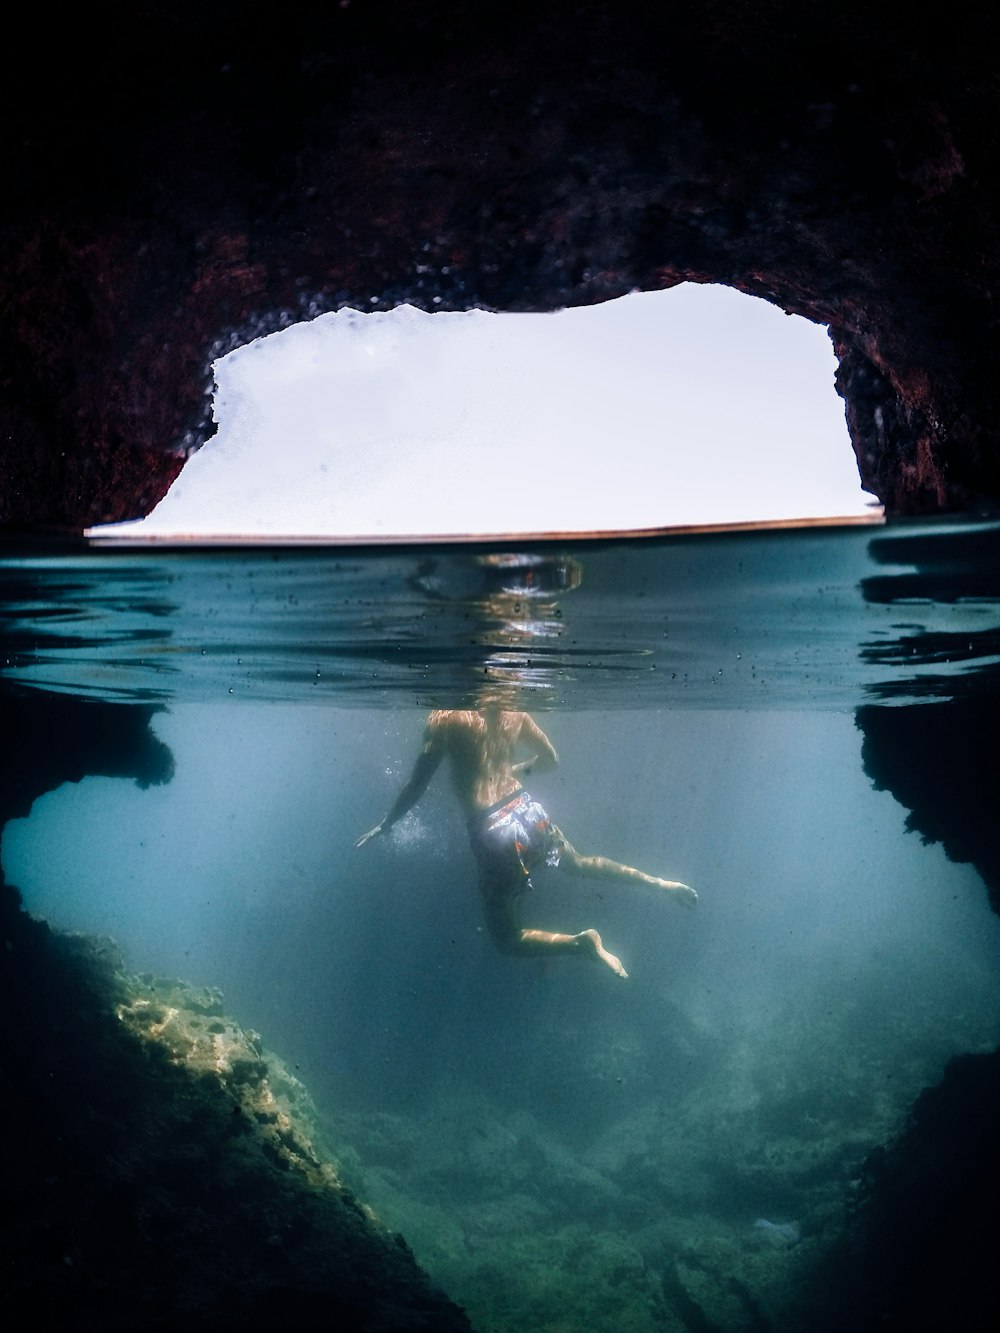 Una persona nadando en el agua frente a una cueva